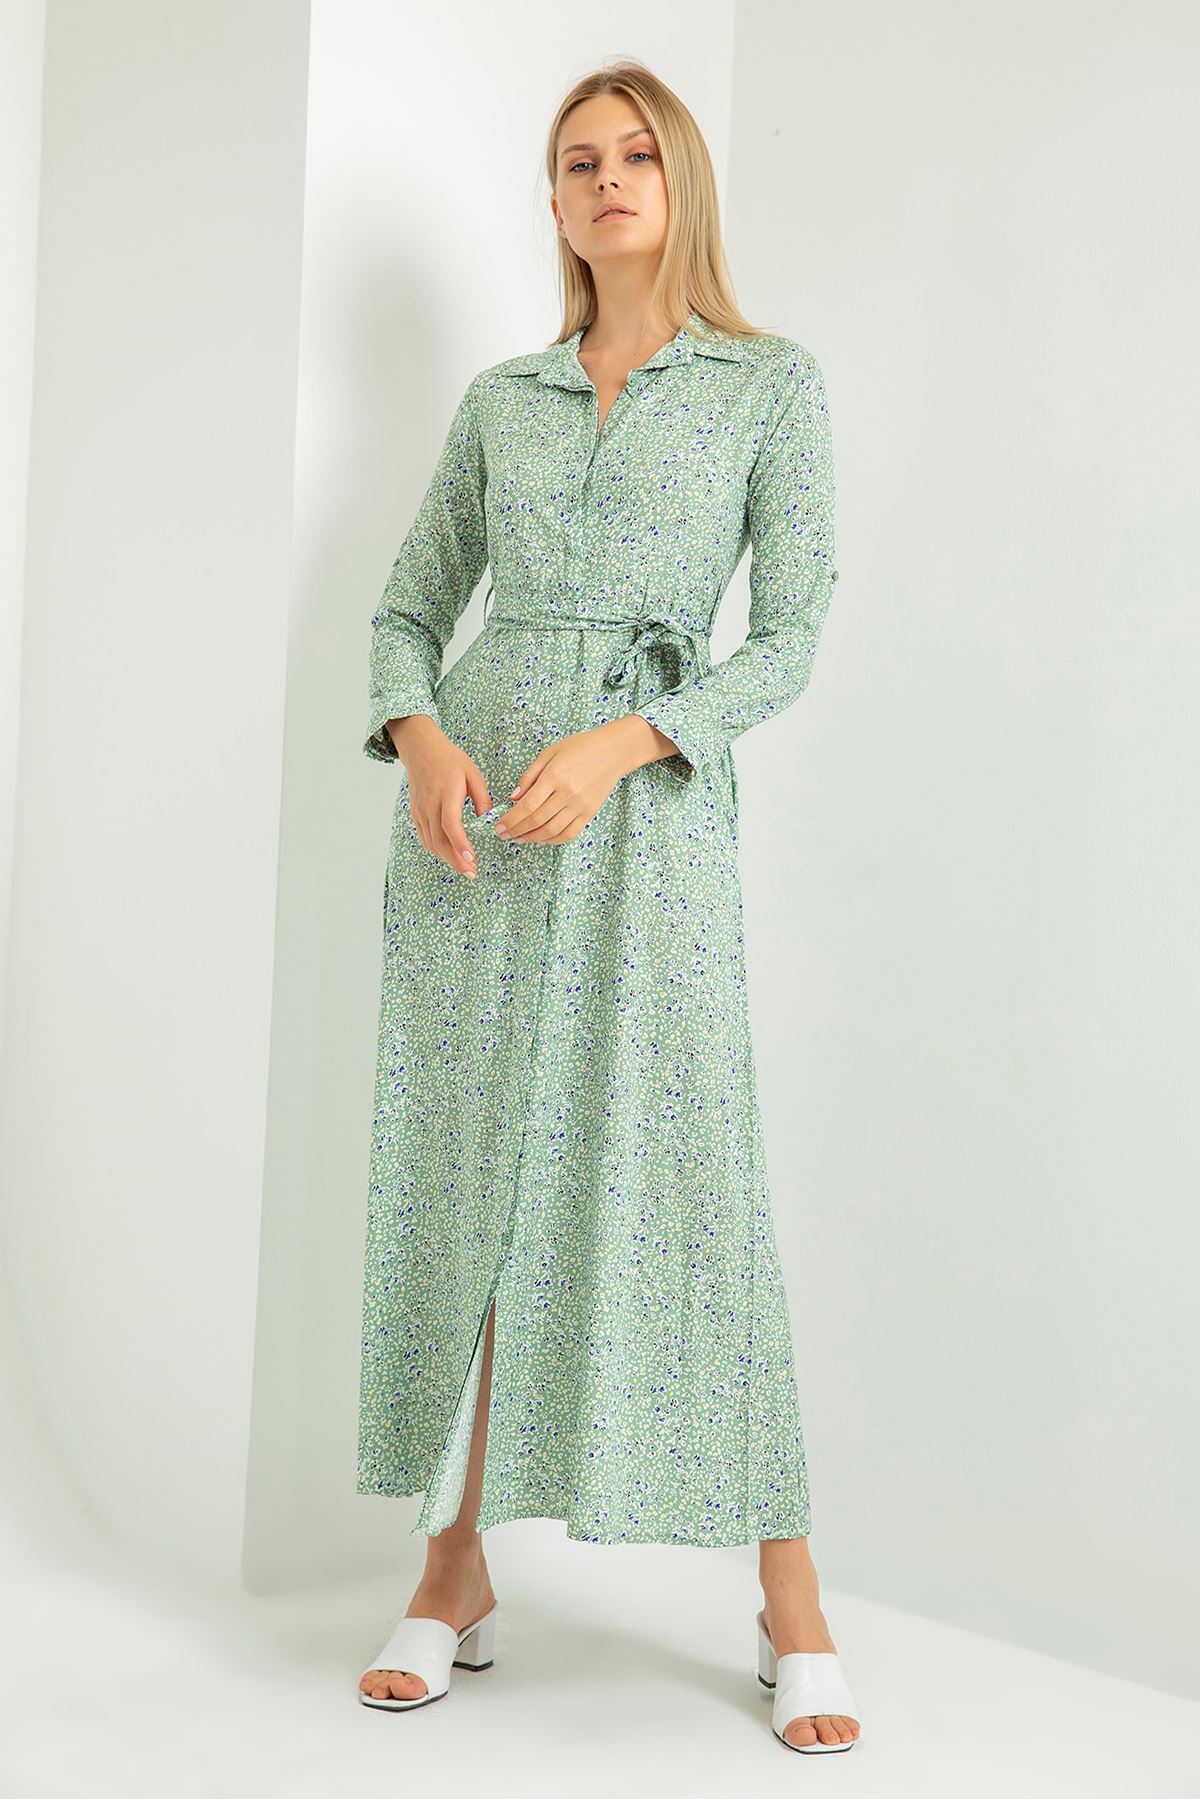 Long Sleeve Shirt Collar Floral Print Women Dress - Mint